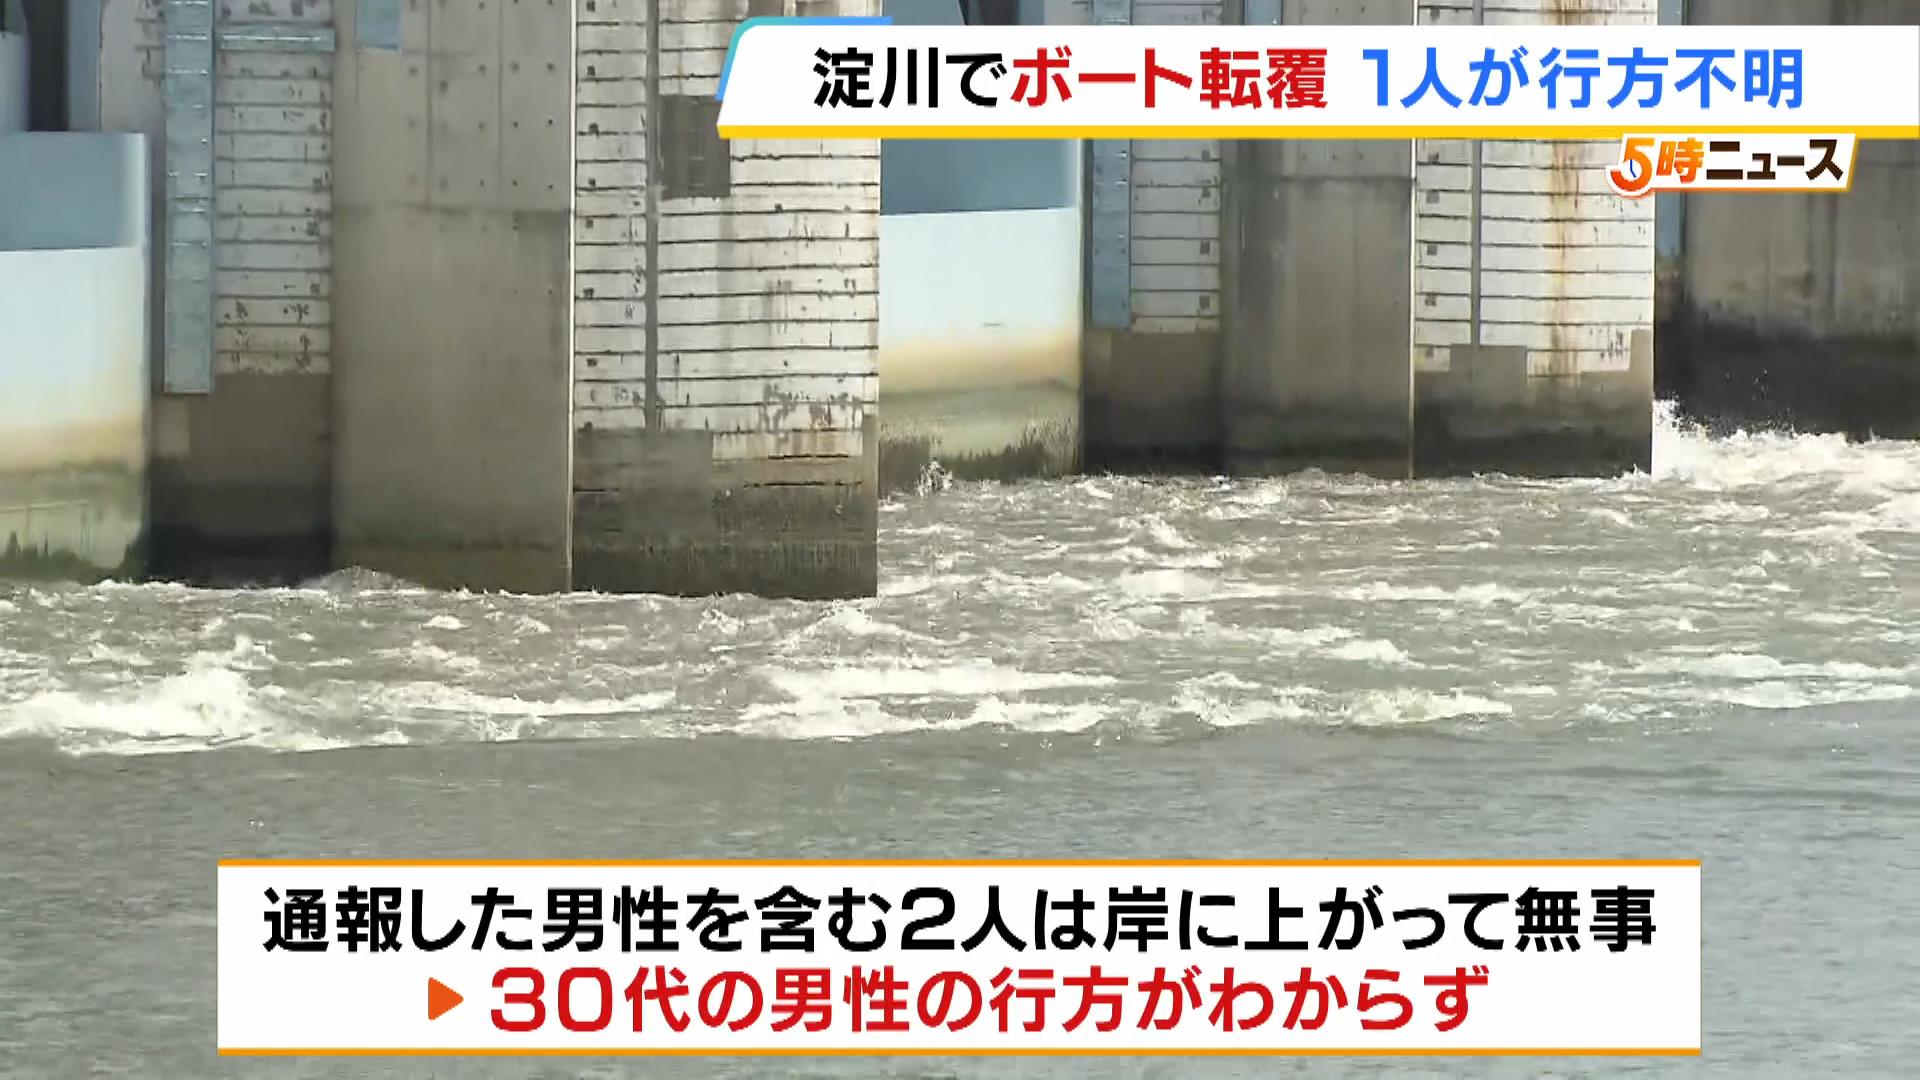 ボート転覆し30代男性が行方不明「釣りをするため京都府八幡市からボートに乗った」大阪・淀川